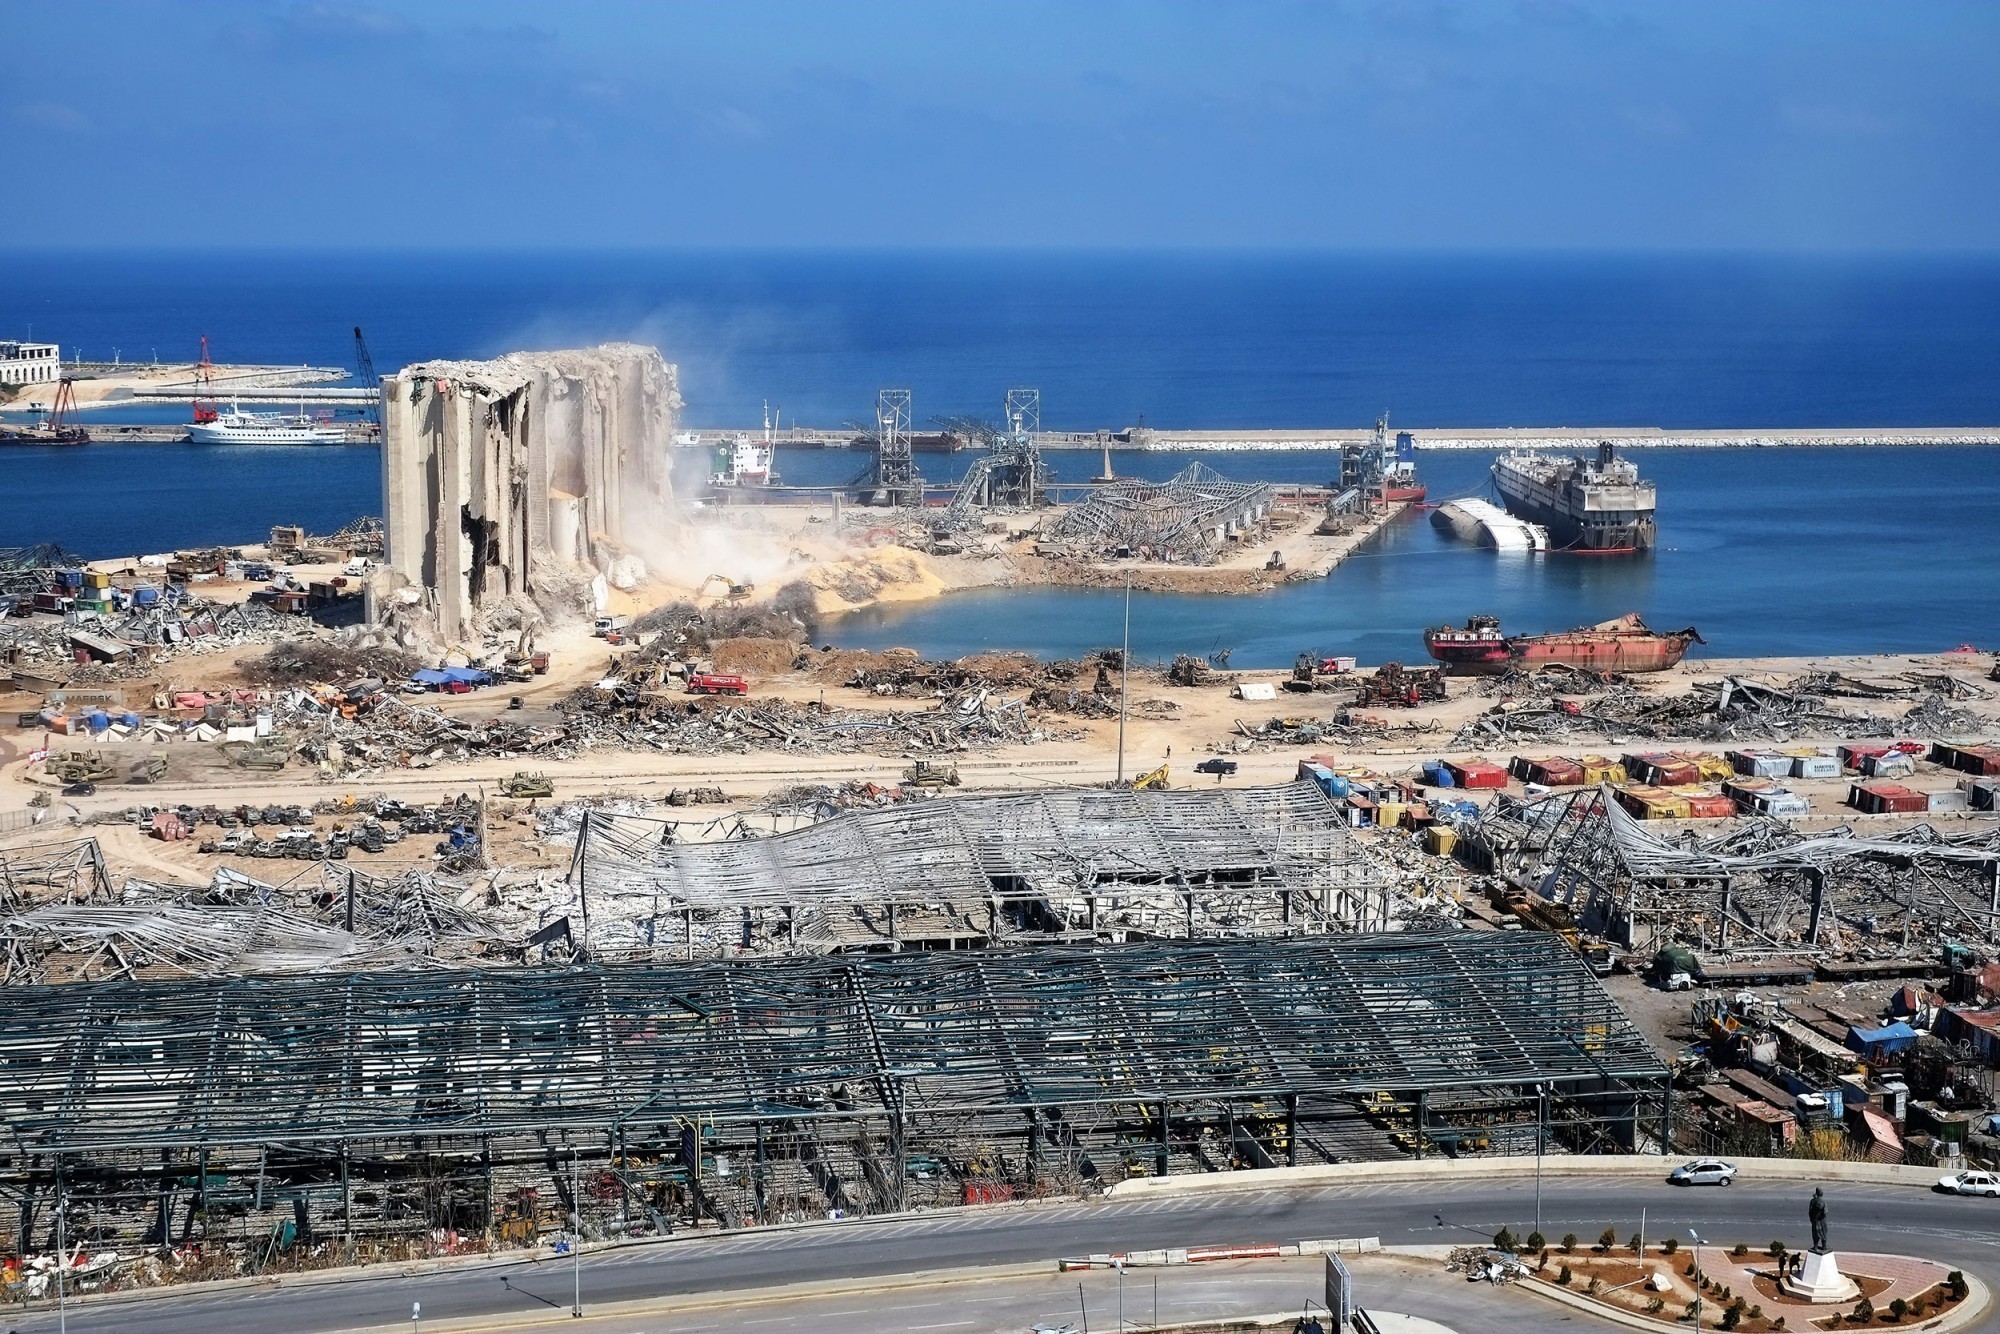 Les ruines des silos à grains dans le port de Beyrouth (à gauche sur la photo) à peine trois semaines après la catastrophe. Les silos étaient les plus grands du pays et avaient une capacité de 120'000 t.